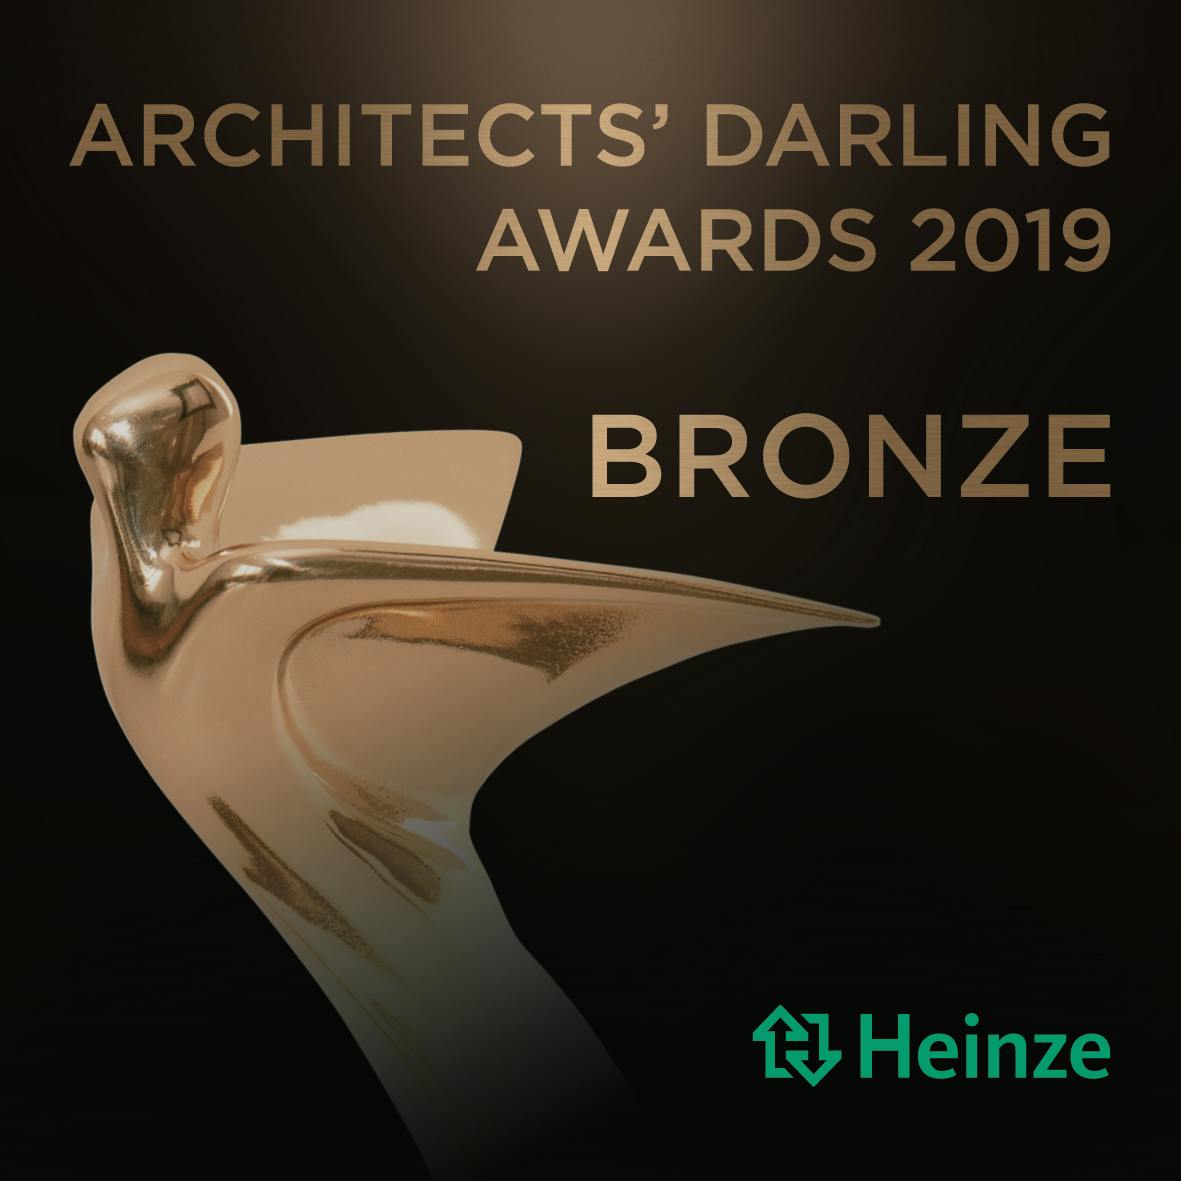 Bildnummer 32 des aktuellen Abschnitts von Cosentino's C-Magazine wird mit dem Bronze Architect's Darling Award 2019 ausgezeichnet. von Cosentino Deutschland